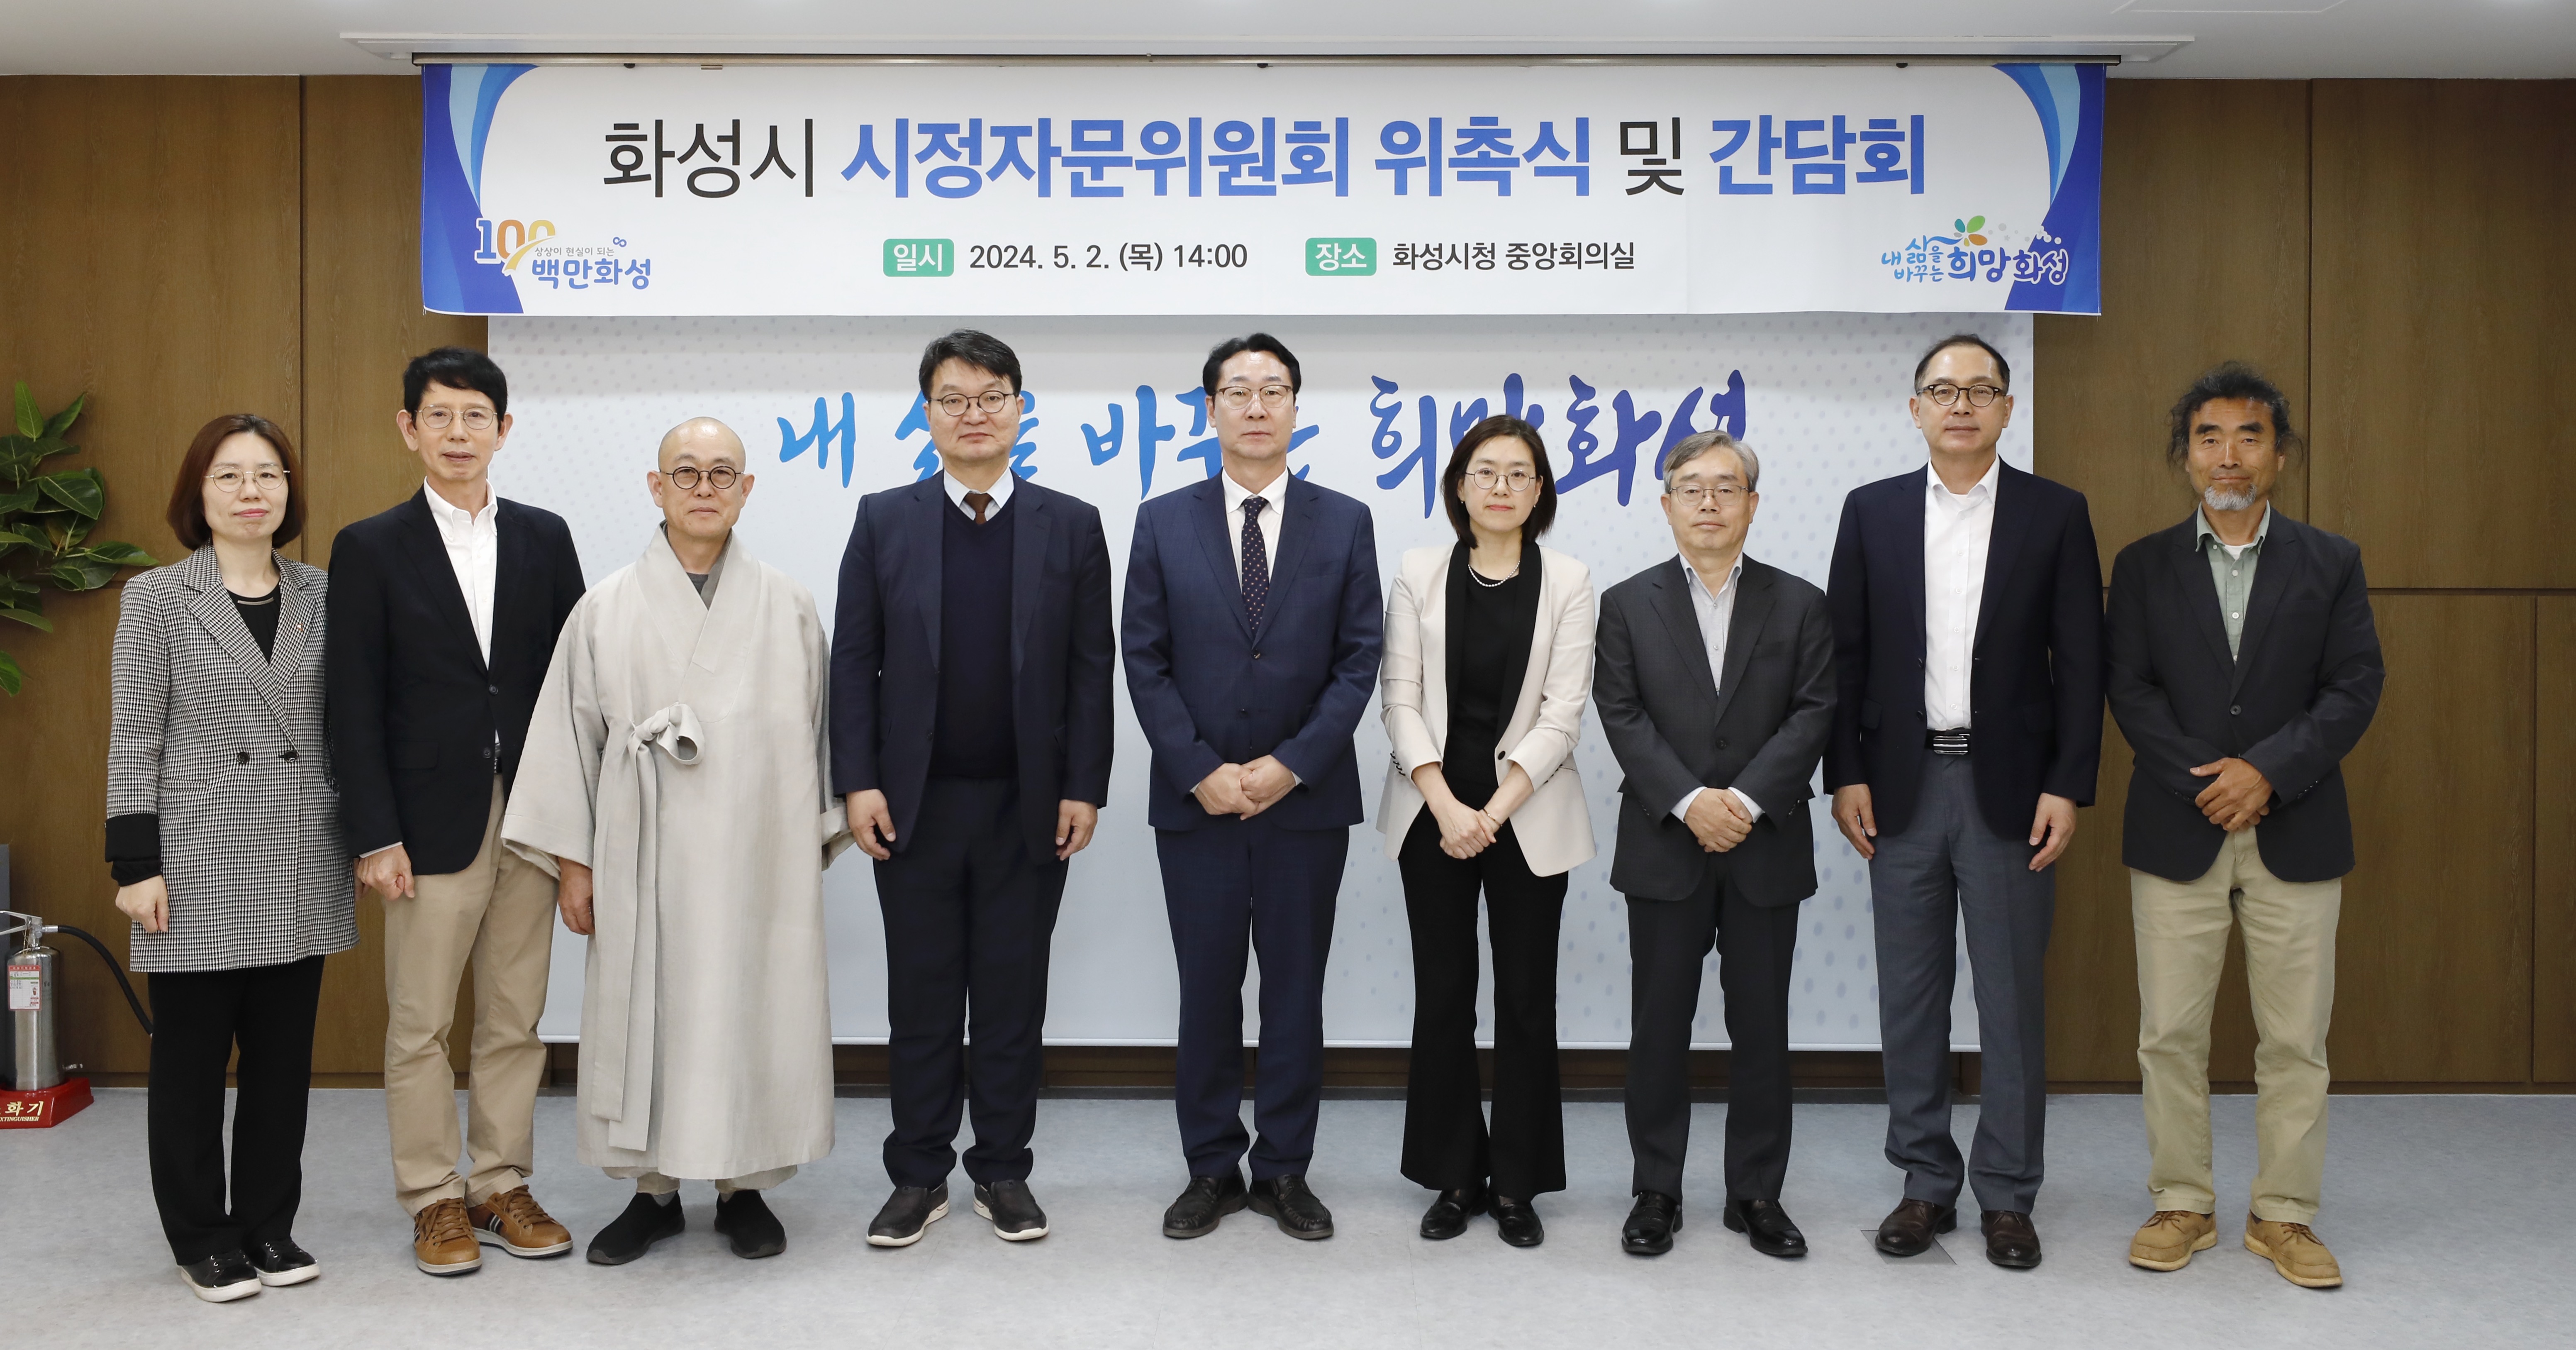 화성시,시정자문위원회 위원 위촉 및 간담회 개최